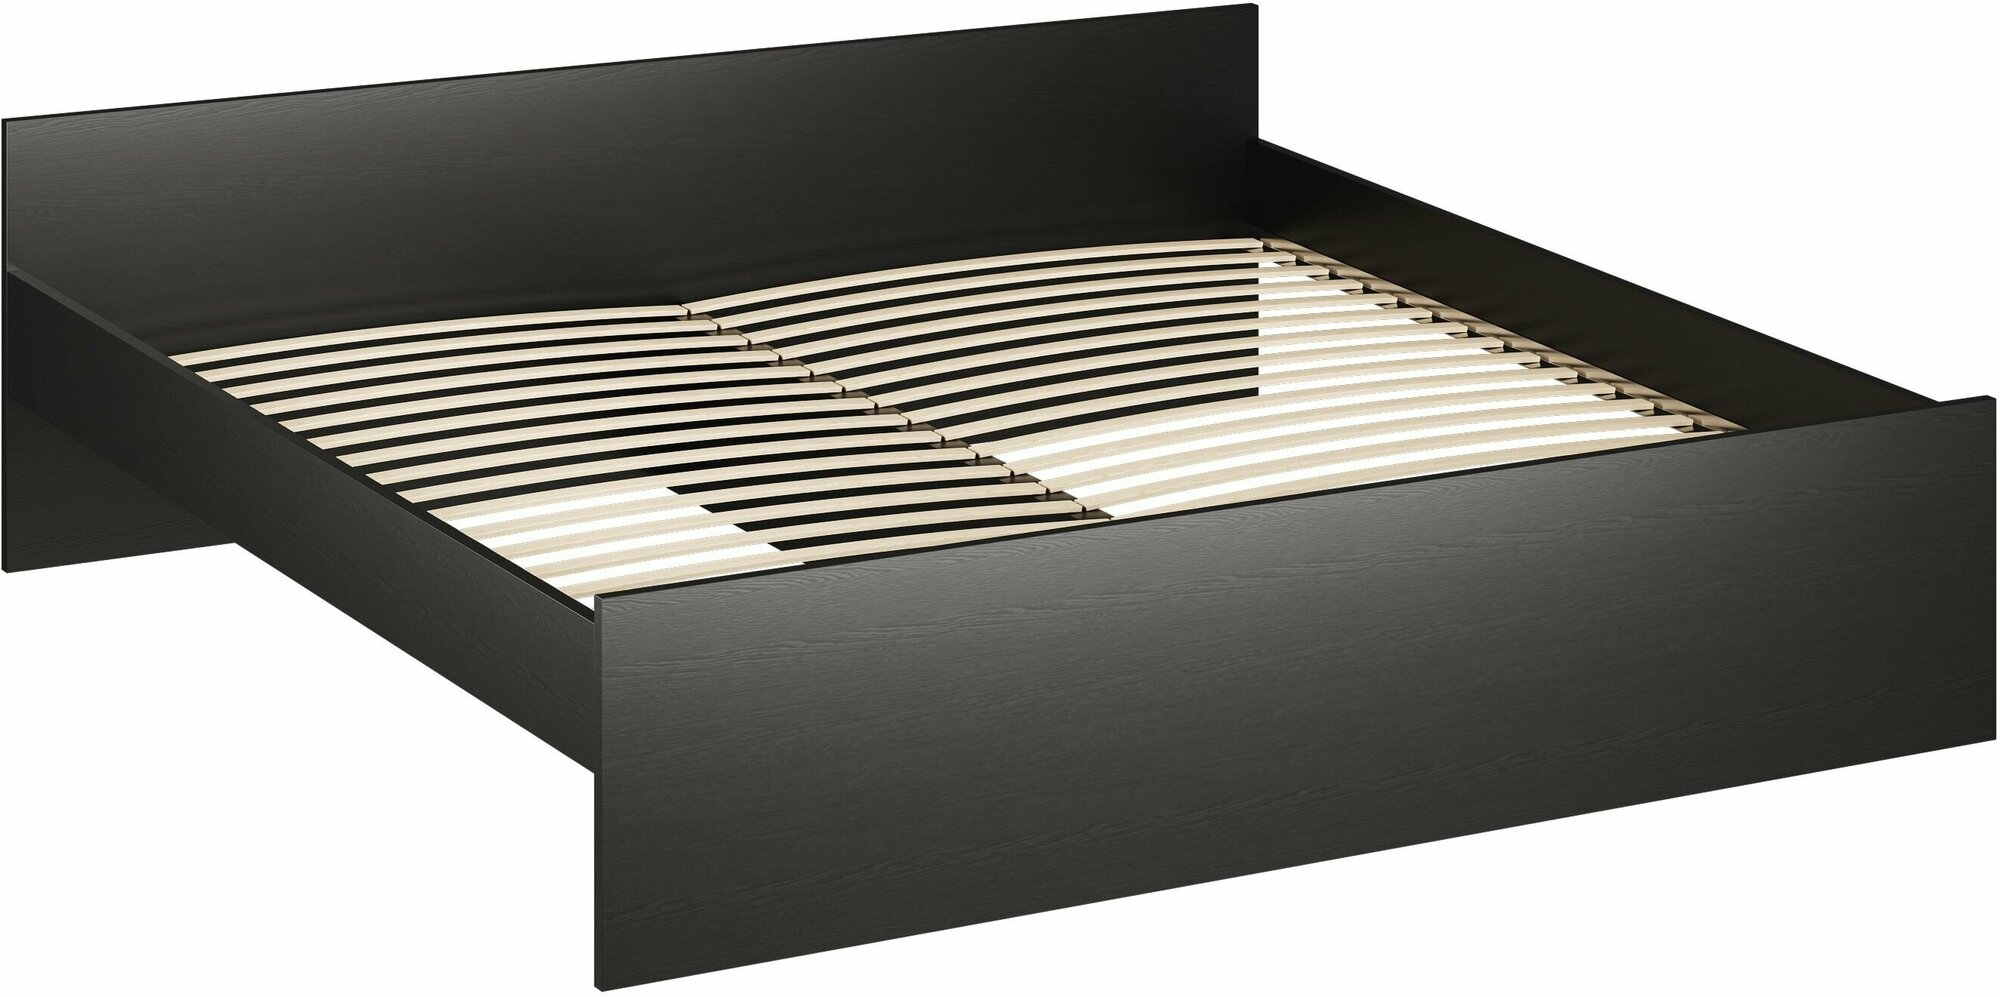 Кровать ГУД ЛАКК Орион, двуспальная, 200х200 см, черная, дуб венге